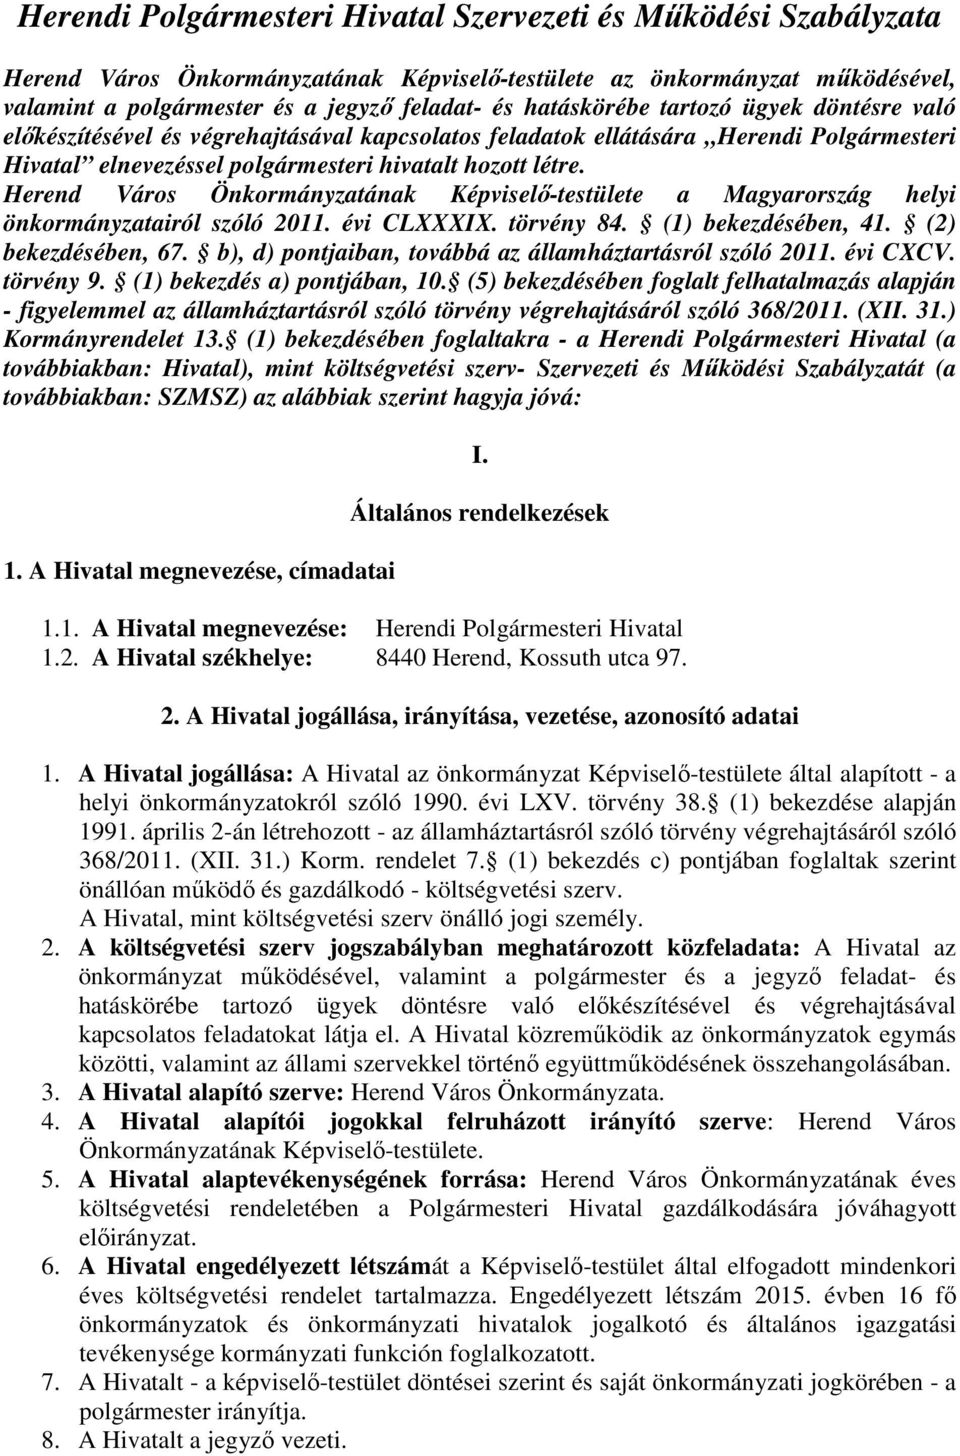 Herend Város Önkormányzatának Képviselő-testülete a Magyarország helyi önkormányzatairól szóló 2011. évi CLXXXIX. törvény 84. (1) bekezdésében, 41. (2) bekezdésében, 67.